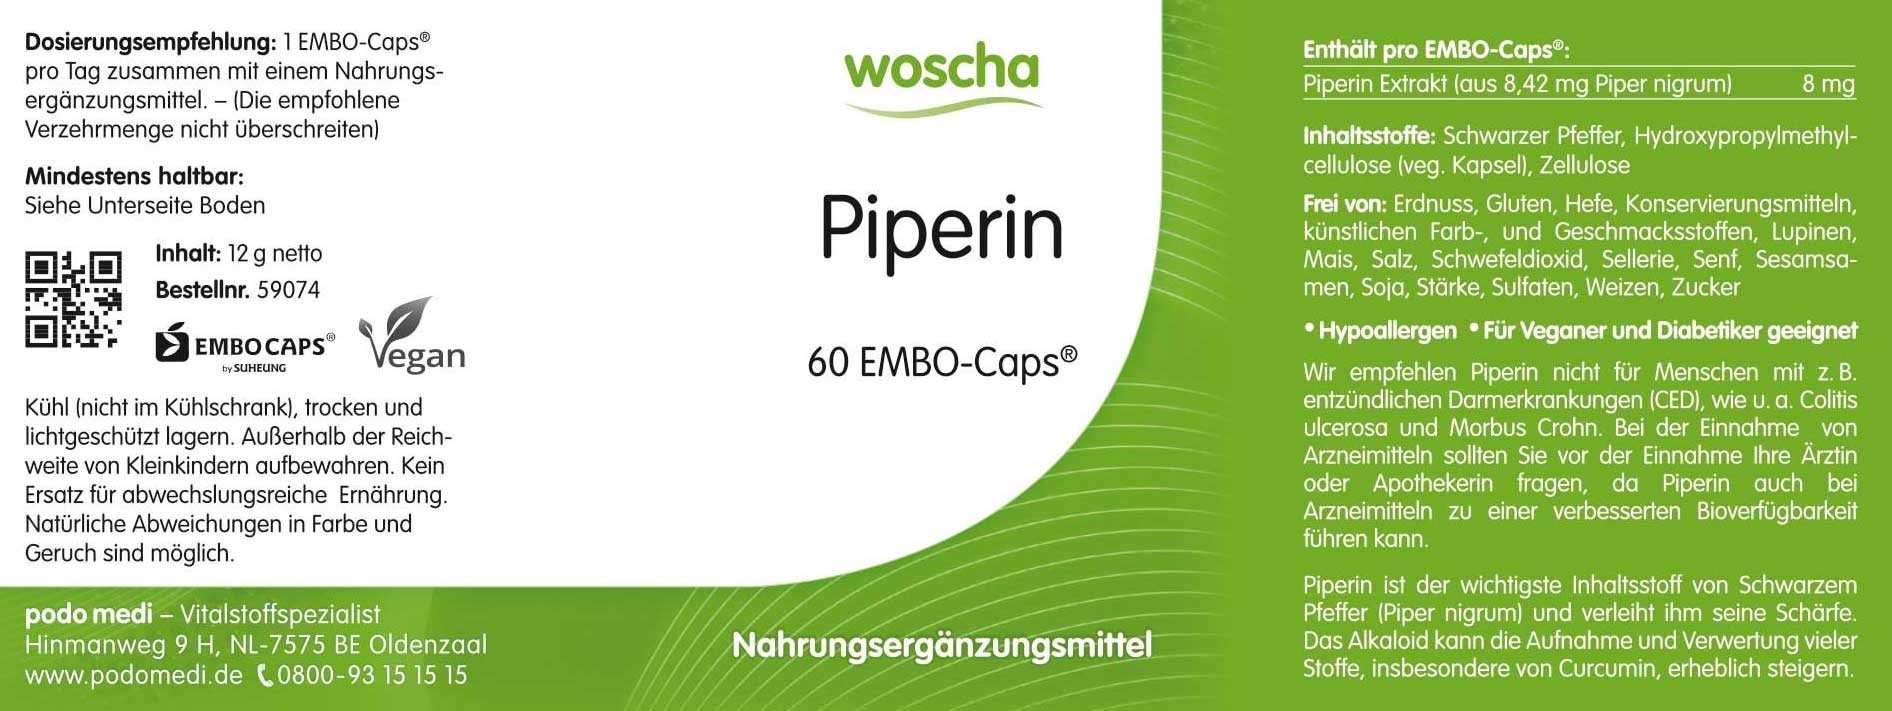 Woscha Piperin schwarzer Pfeffer von podo medi beinhaltet 60 Kapseln Etikett